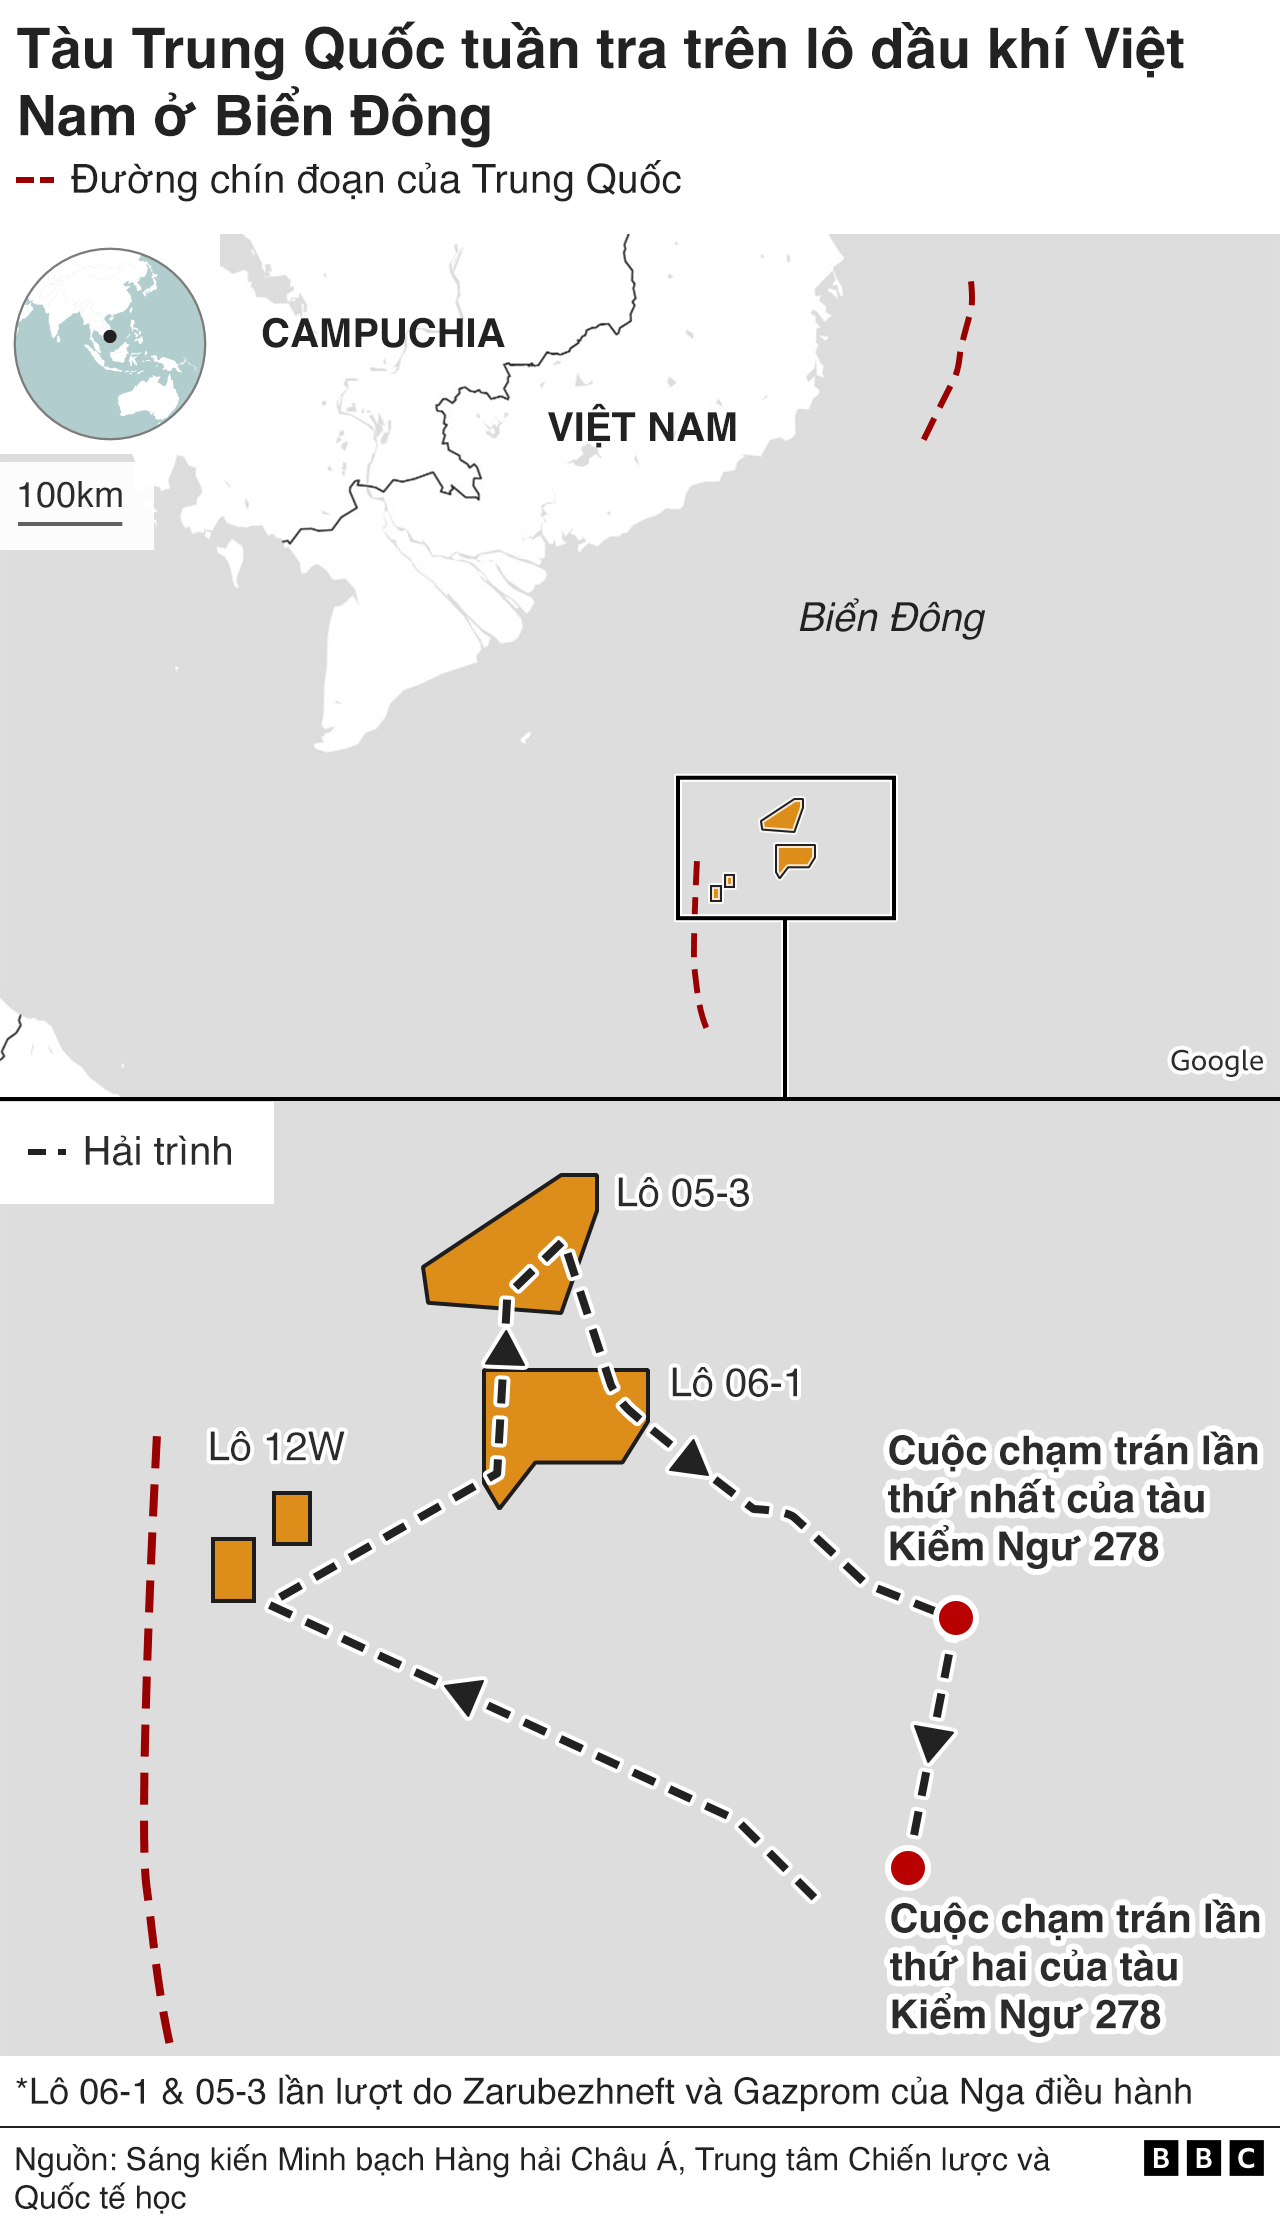 Sơ đồ của Tàu hải cảnh Trung Quốc 5205 đi qua Chim Sáo ở lô 12W, mỏ Lan Đỏ - Lan Tây ở lô 06-1, mỏ Mộc Tinh ở lô 05-3 và Hải Thạch lô 05-2 hồi 25/3